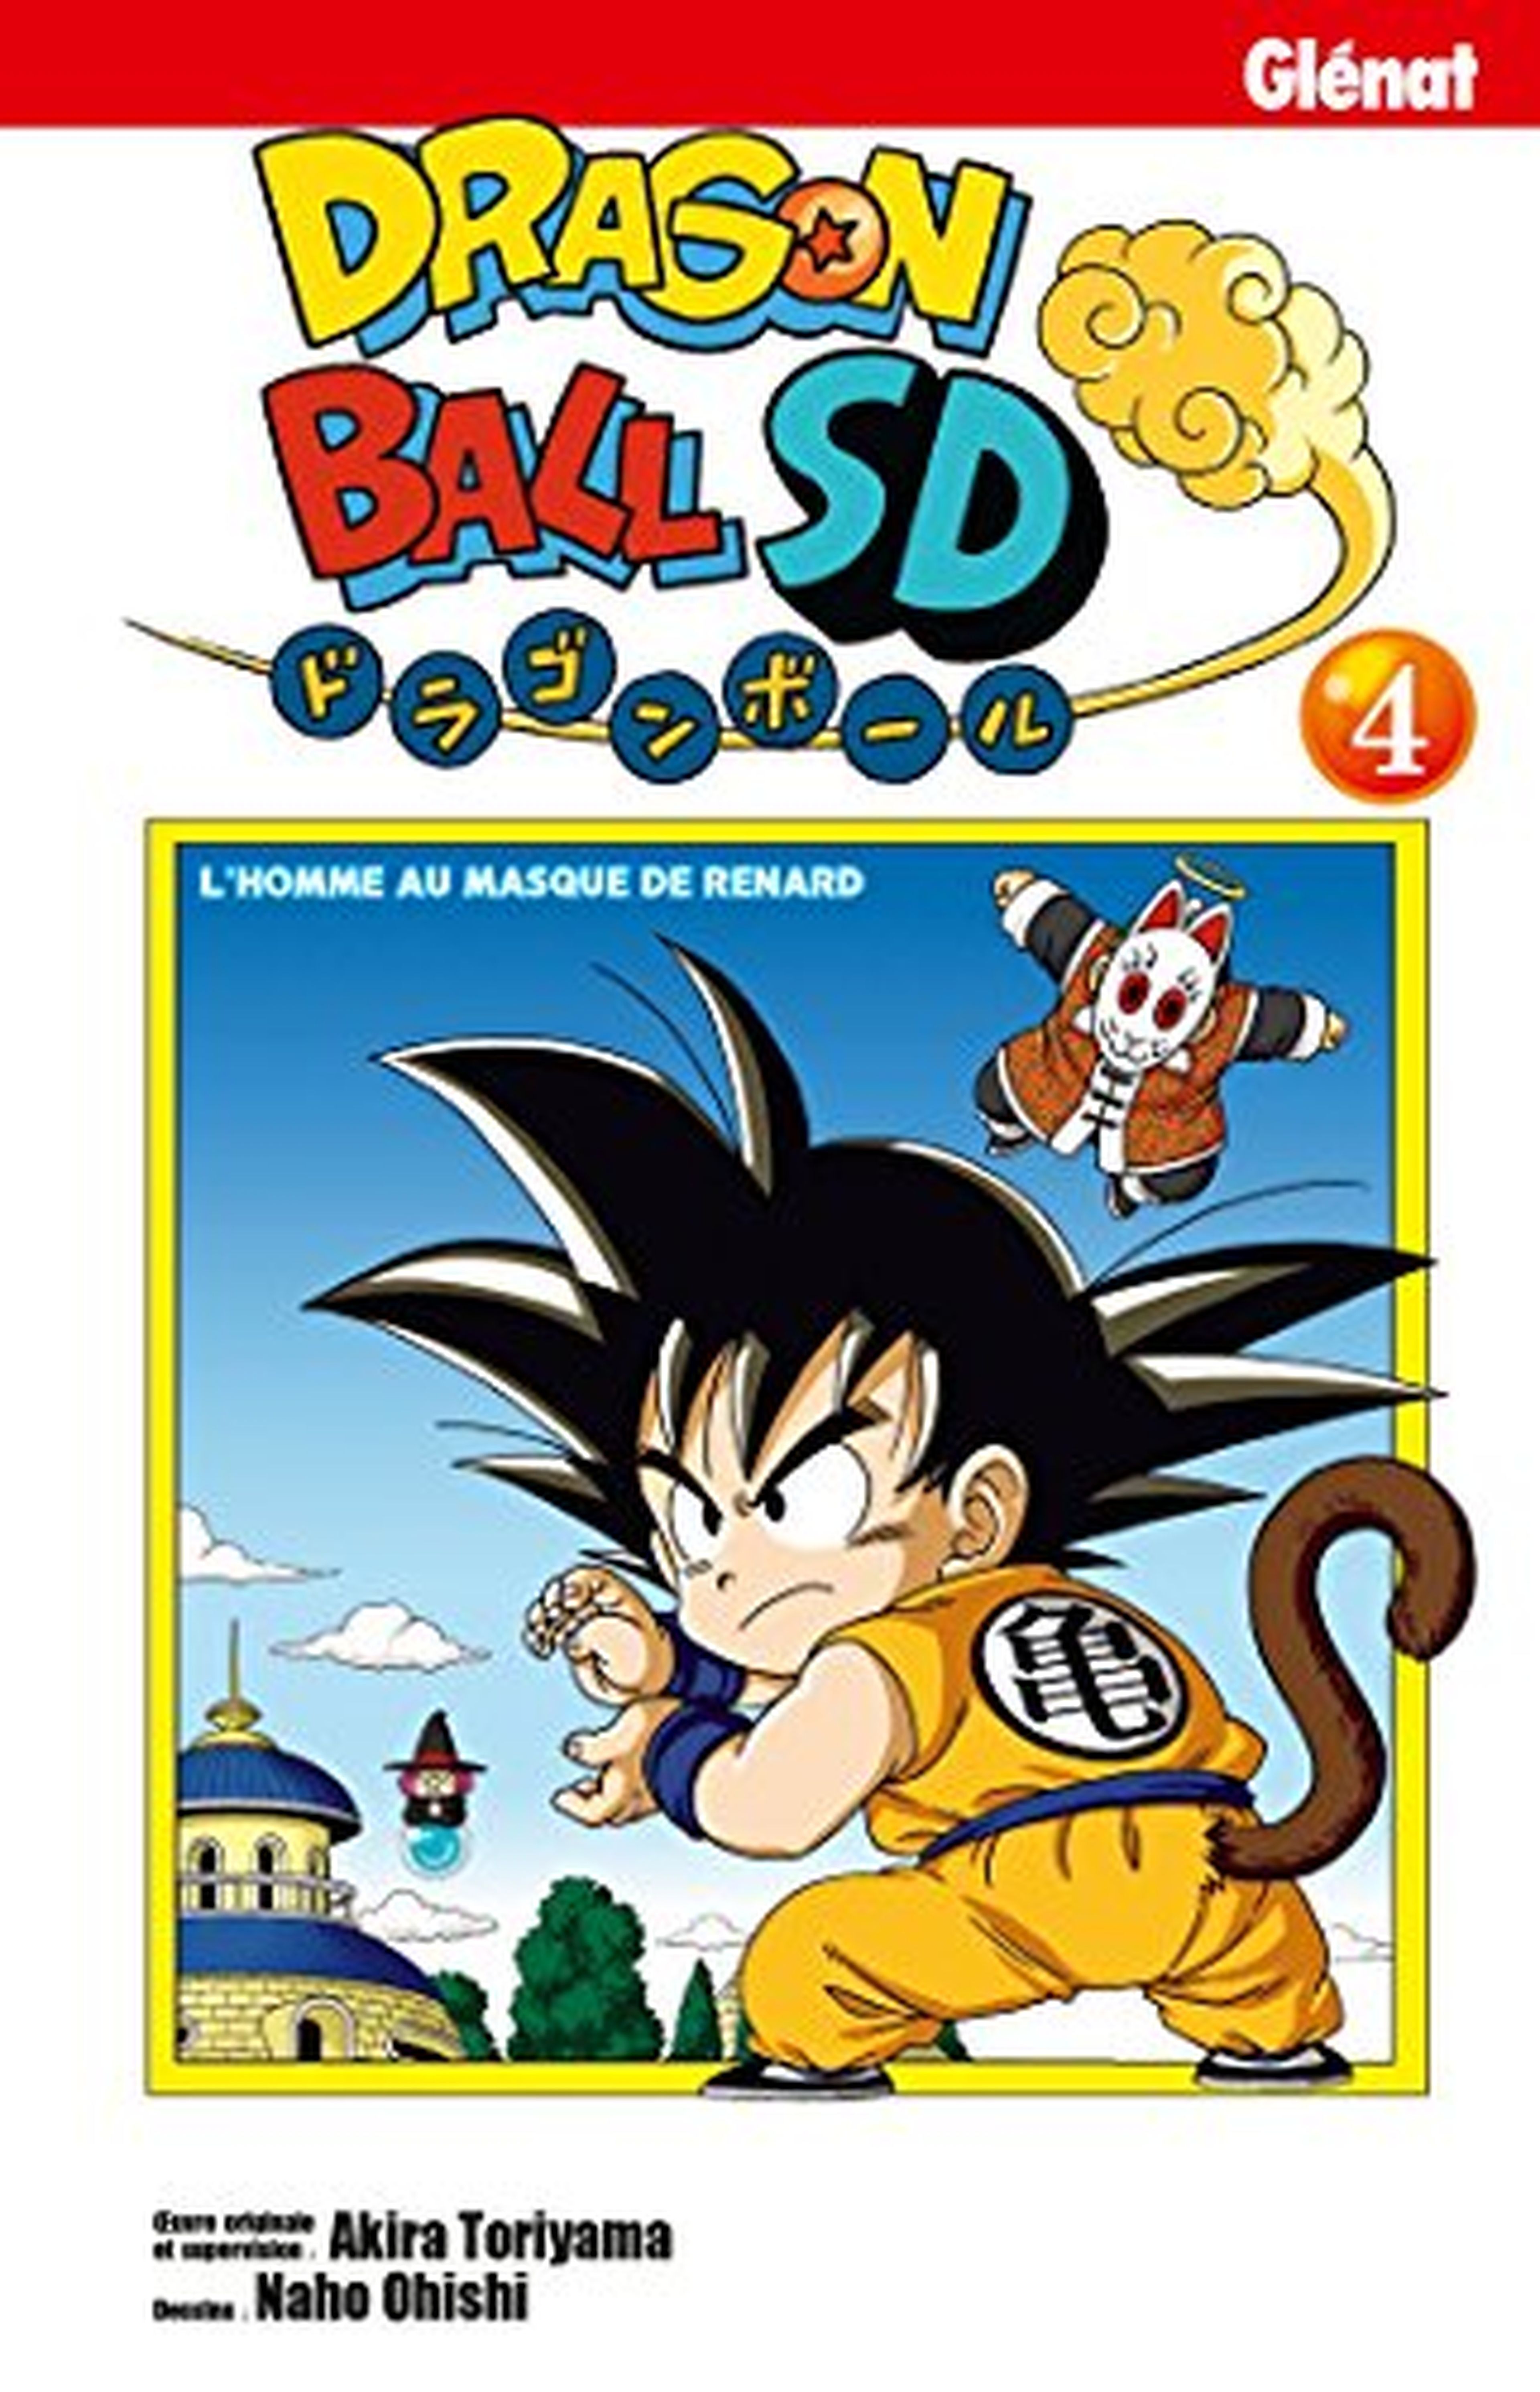 El nuevo tomo de Dragon Ball SD adelanta su fecha de lanzamiento en España